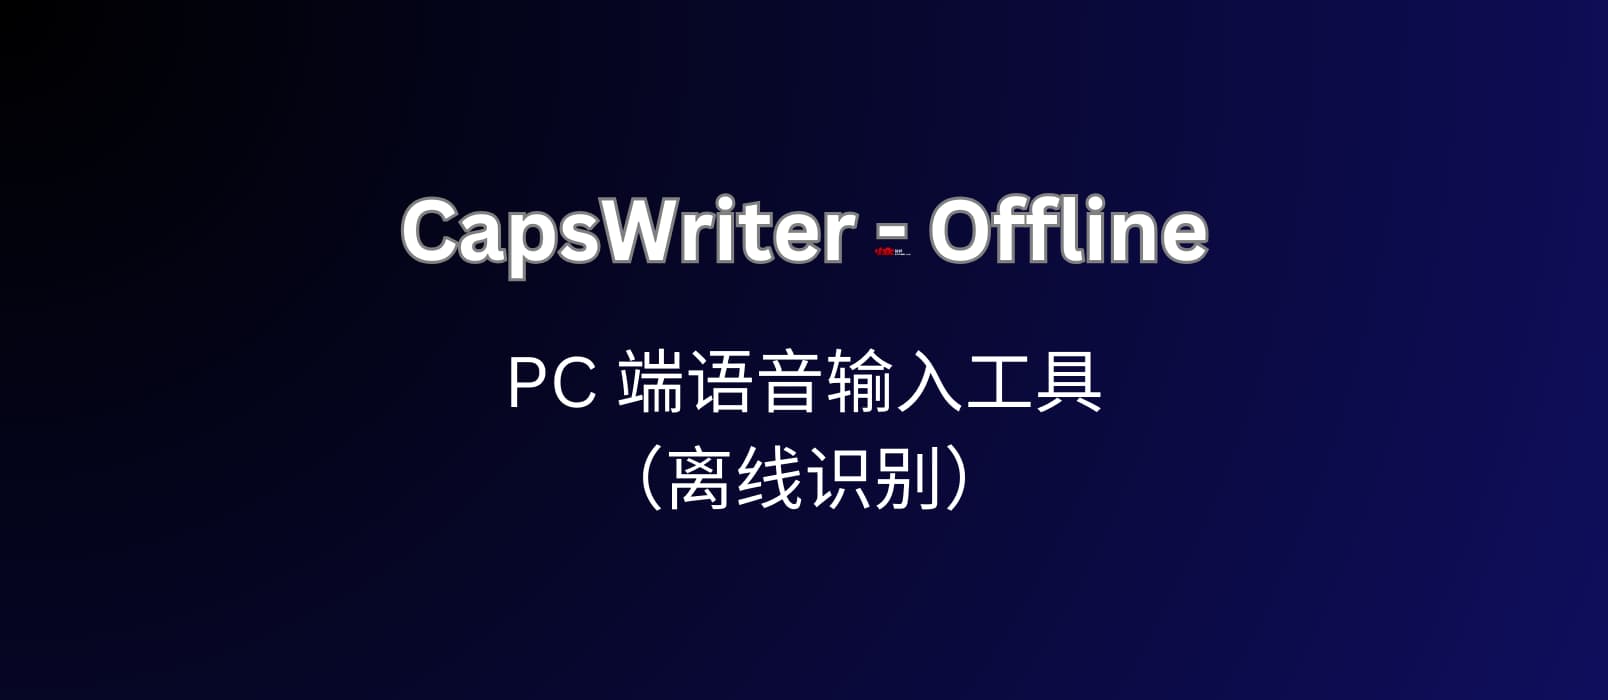 CapsWriter-Offline，可能是最好用的 PC 端语音输入工具（离线识别） 